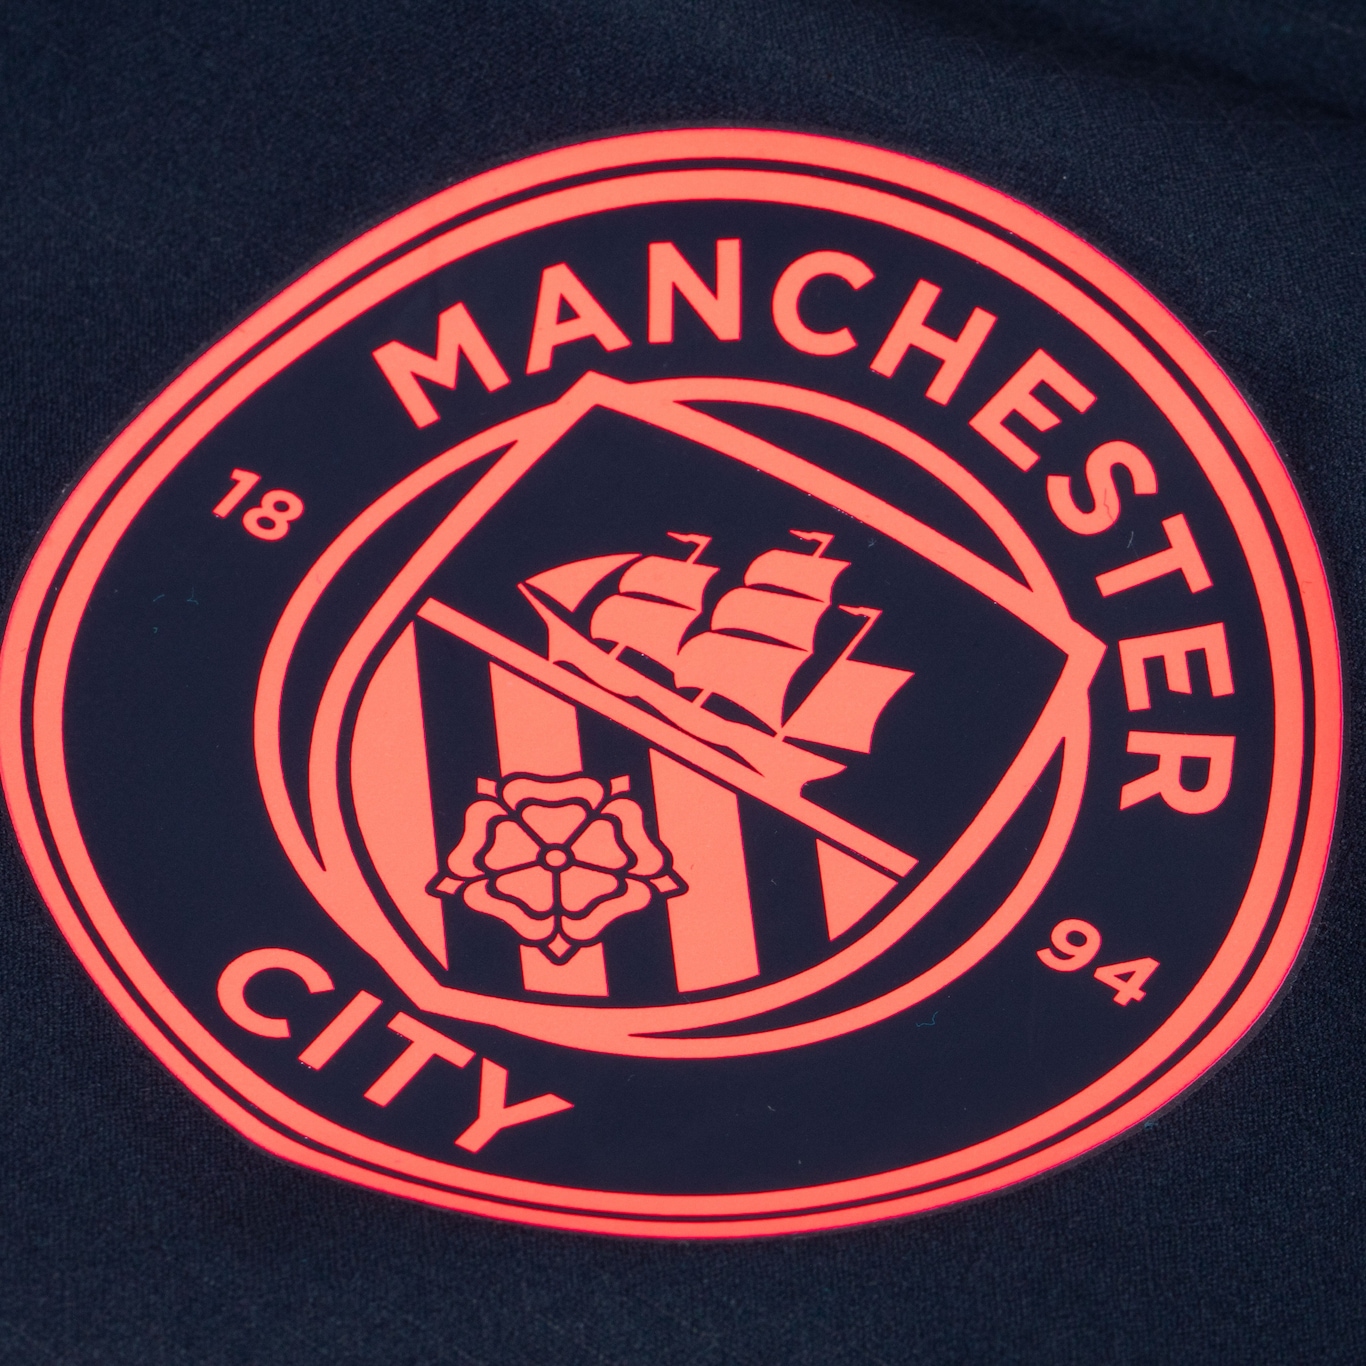 Camisa do Manchester City III 23 Puma Masculina Jogador em